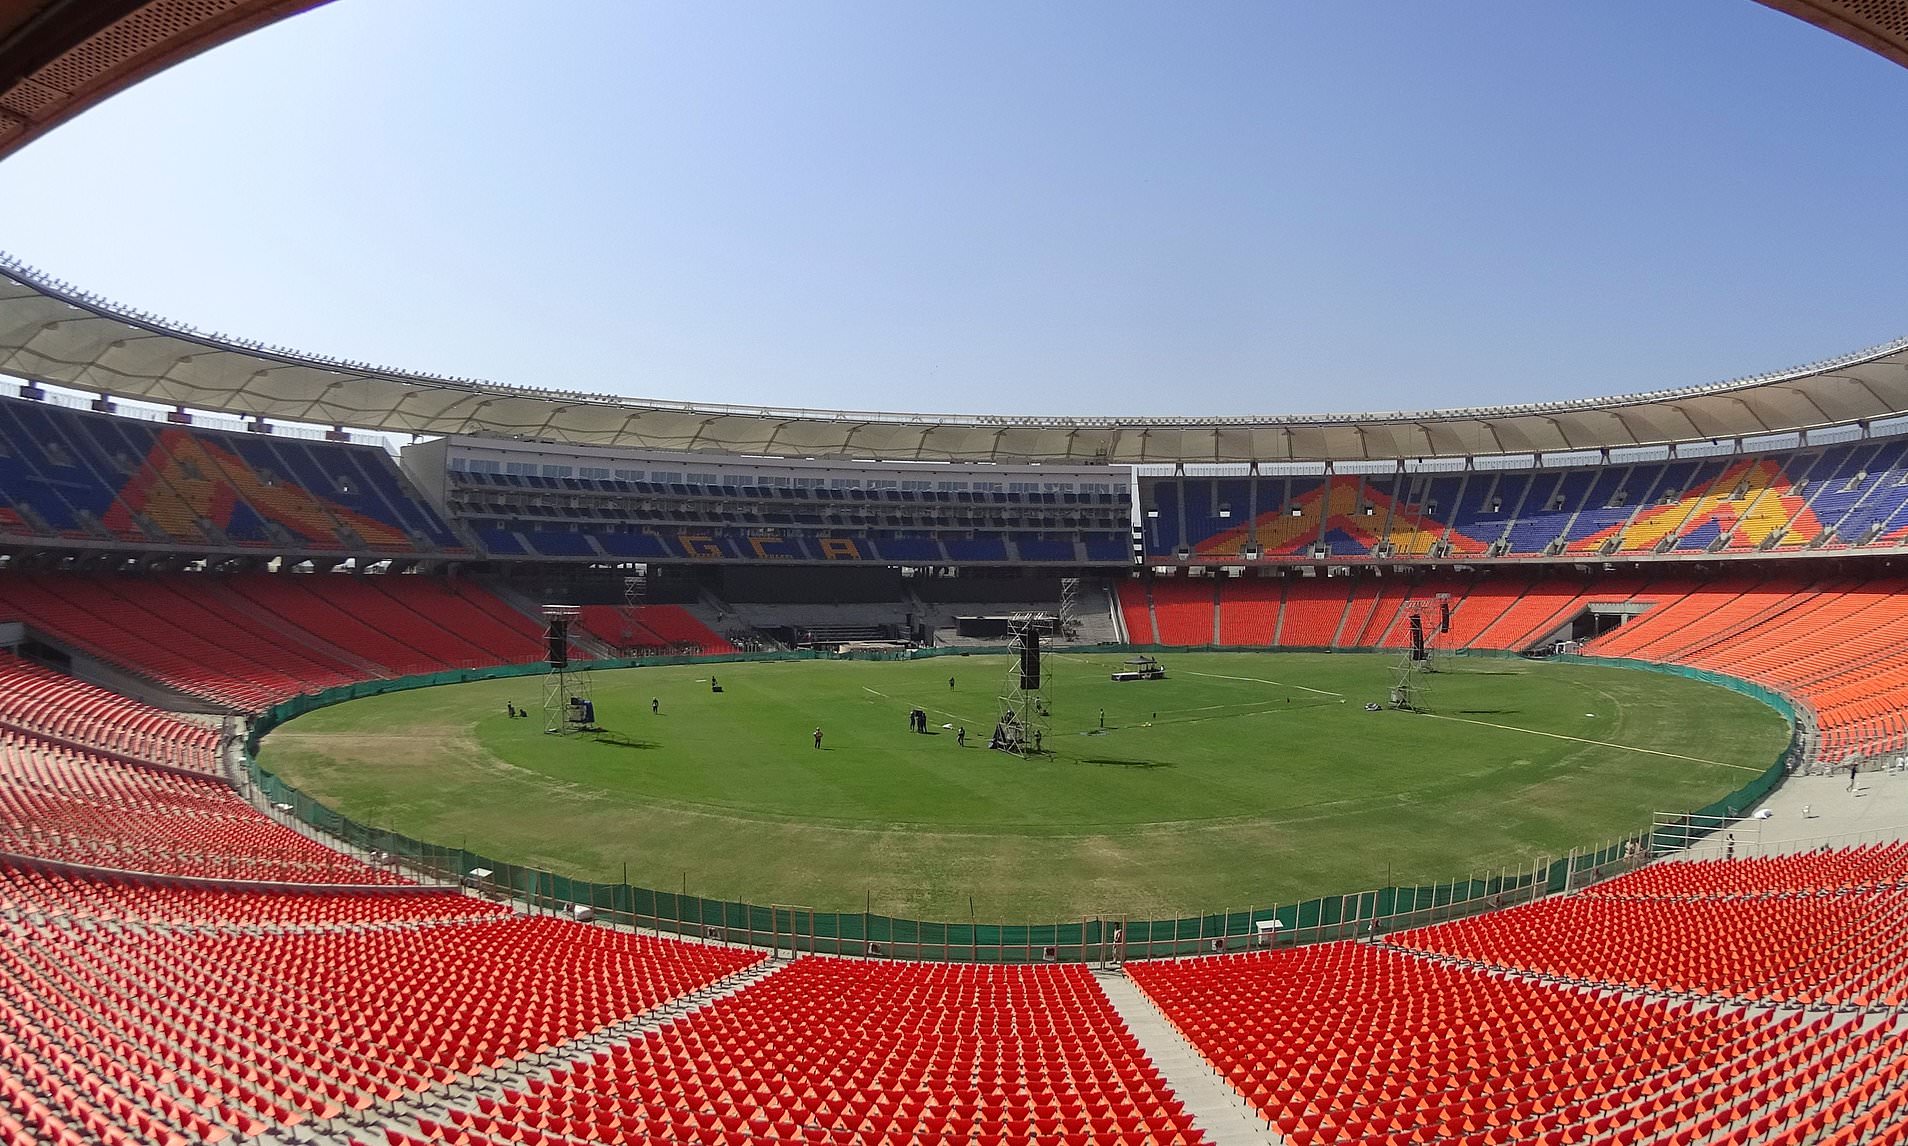 1,10,000 दर्शकों के बैठने की क्षमता वाला नवनिर्मित सरदार पटेल स्टेडियम